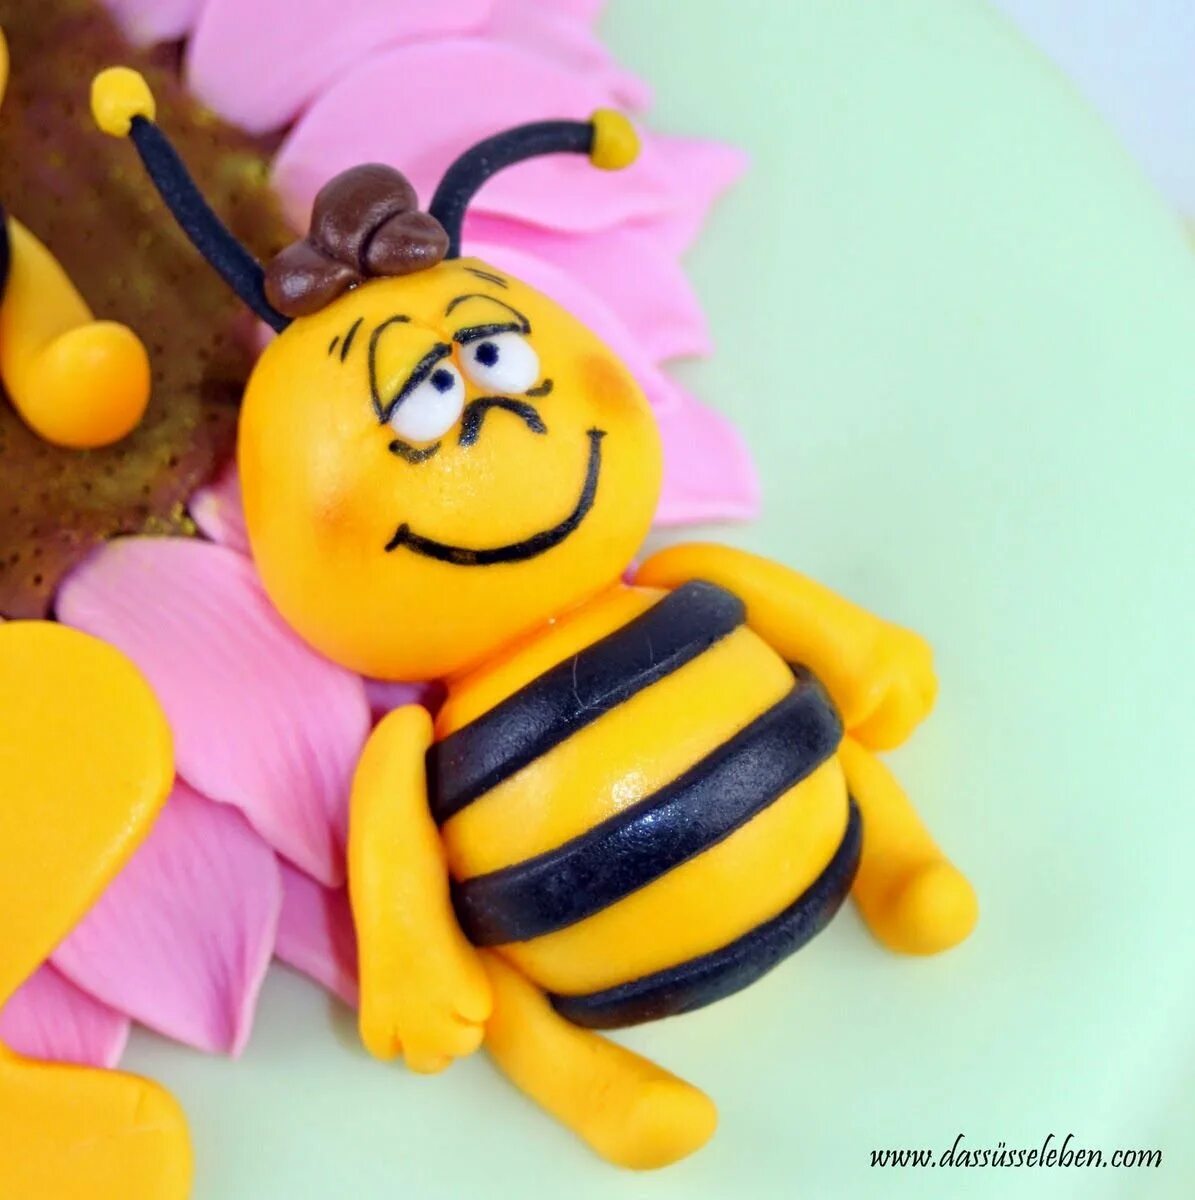 Торт "пчёлка". Фигурки пчелок на торт. Пчела пластилин. Пчелки из марципана.